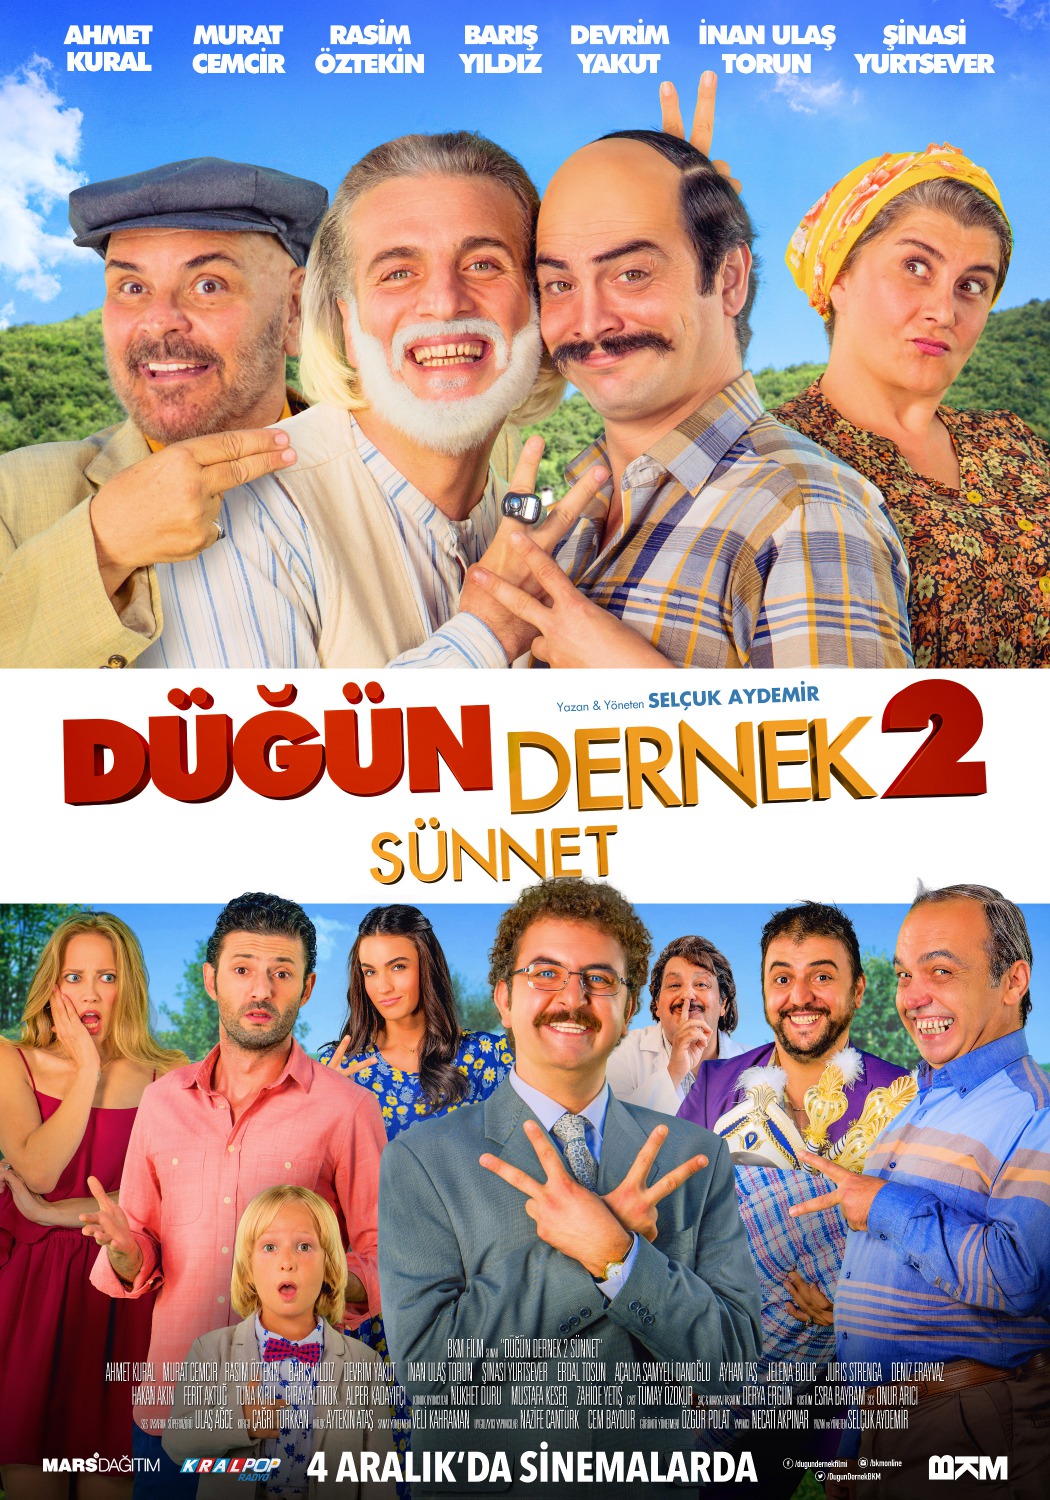 Extra Large Movie Poster Image for Dügün Dernek 2: Sünnet (#1 of 2)